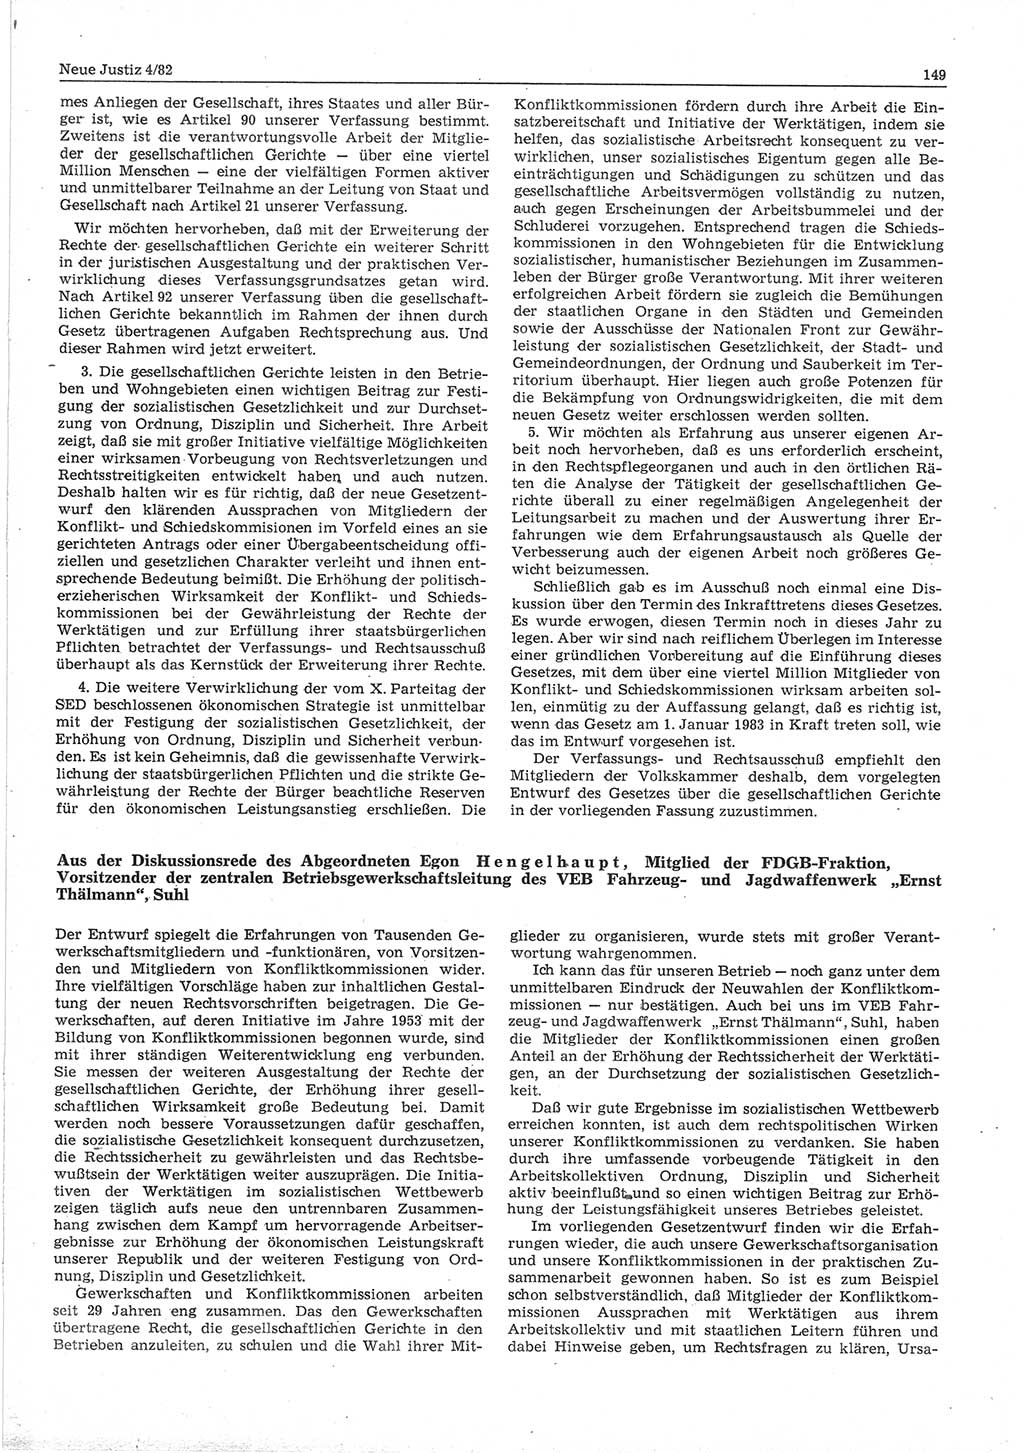 Neue Justiz (NJ), Zeitschrift für sozialistisches Recht und Gesetzlichkeit [Deutsche Demokratische Republik (DDR)], 36. Jahrgang 1982, Seite 149 (NJ DDR 1982, S. 149)